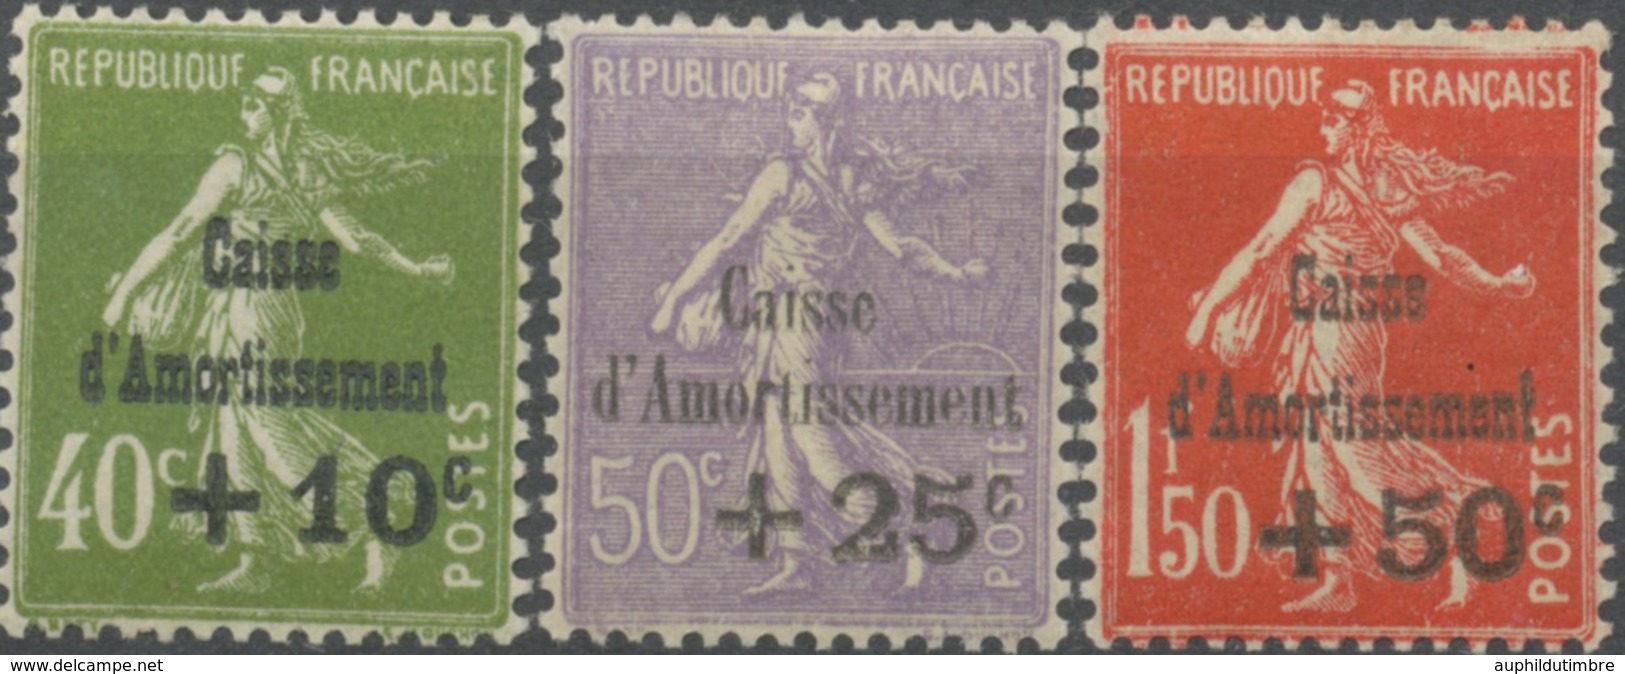 Au Profit De La Caisse D'Amortissement. Types Anciens Surchargés. N°275 à 277 Neuf Luxe ** Y277S - Unused Stamps